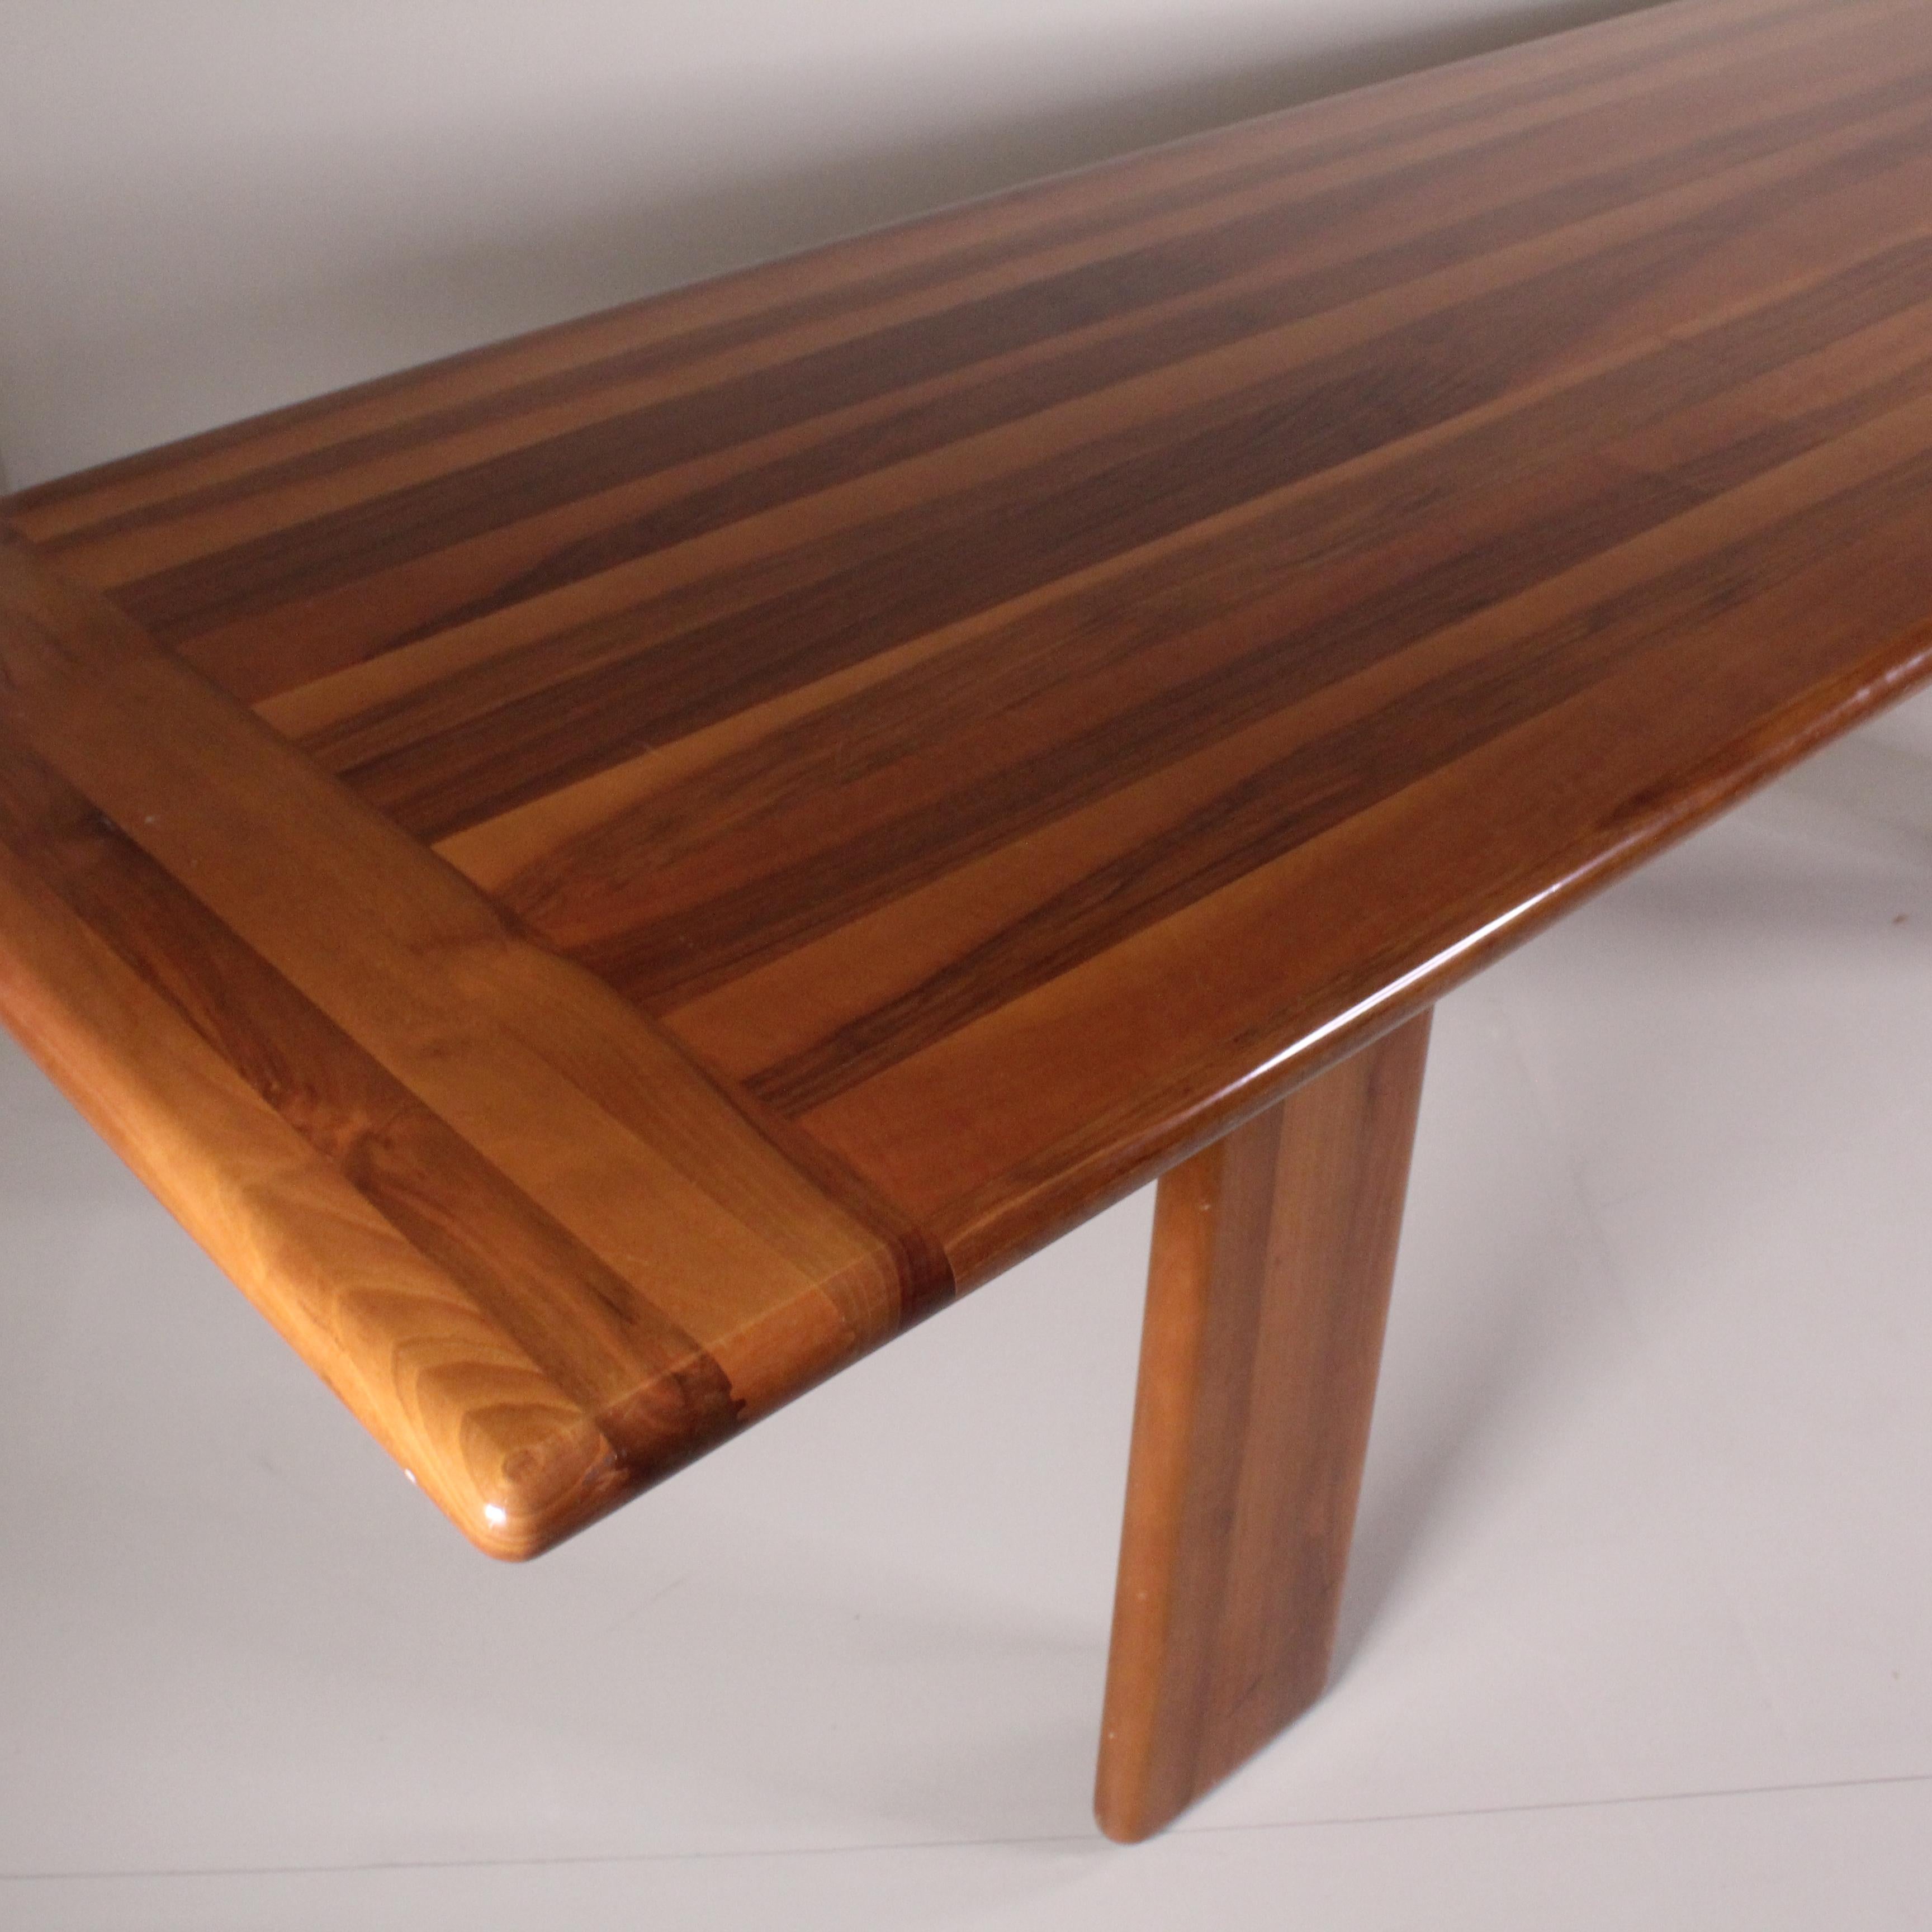 Cette table en bois conçue par Mario Marenco pour MobilGirgi est une icône des années 1960 qui incarne l'esprit de l'époque. Fabriquée avec un savoir-faire artisanal et des matériaux de haute qualité, cette table présente des lignes épurées et un